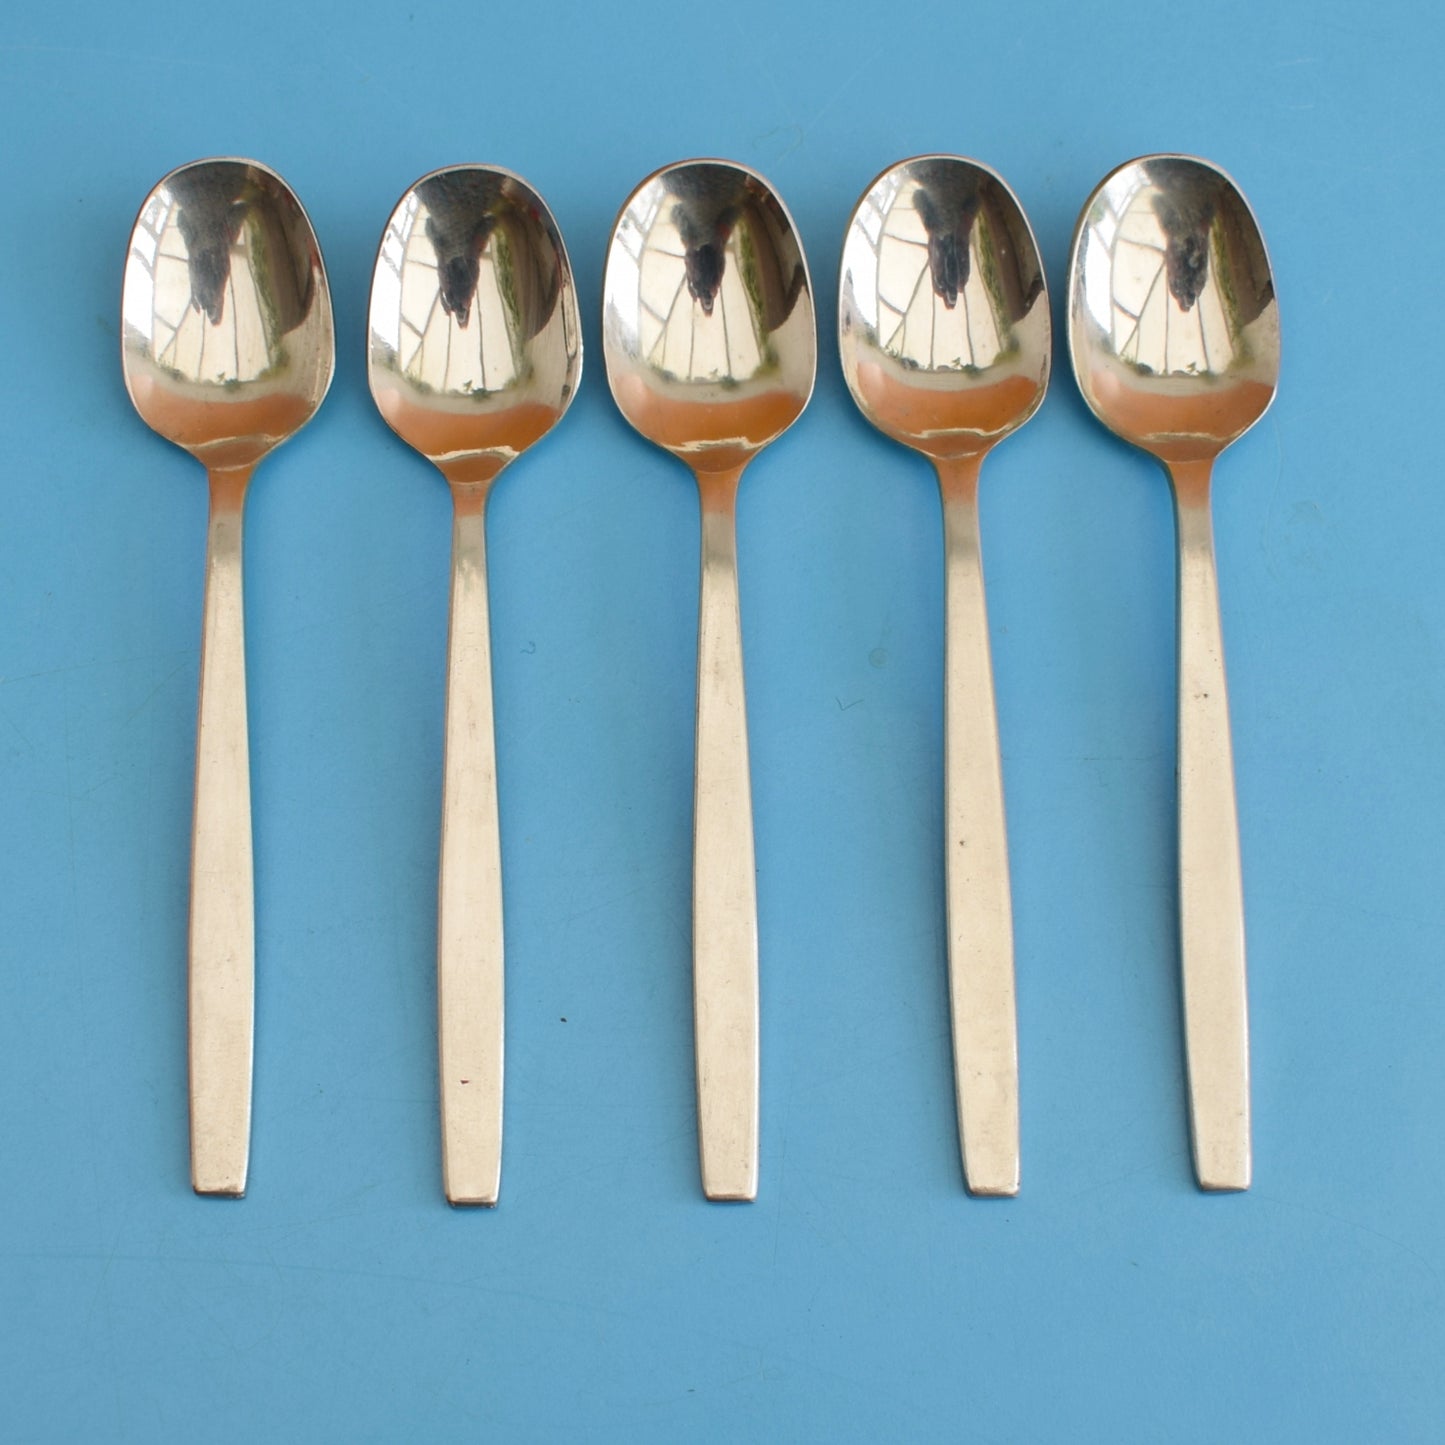 Vintage 1960s Viners Chelsea Cutlery - Spoons